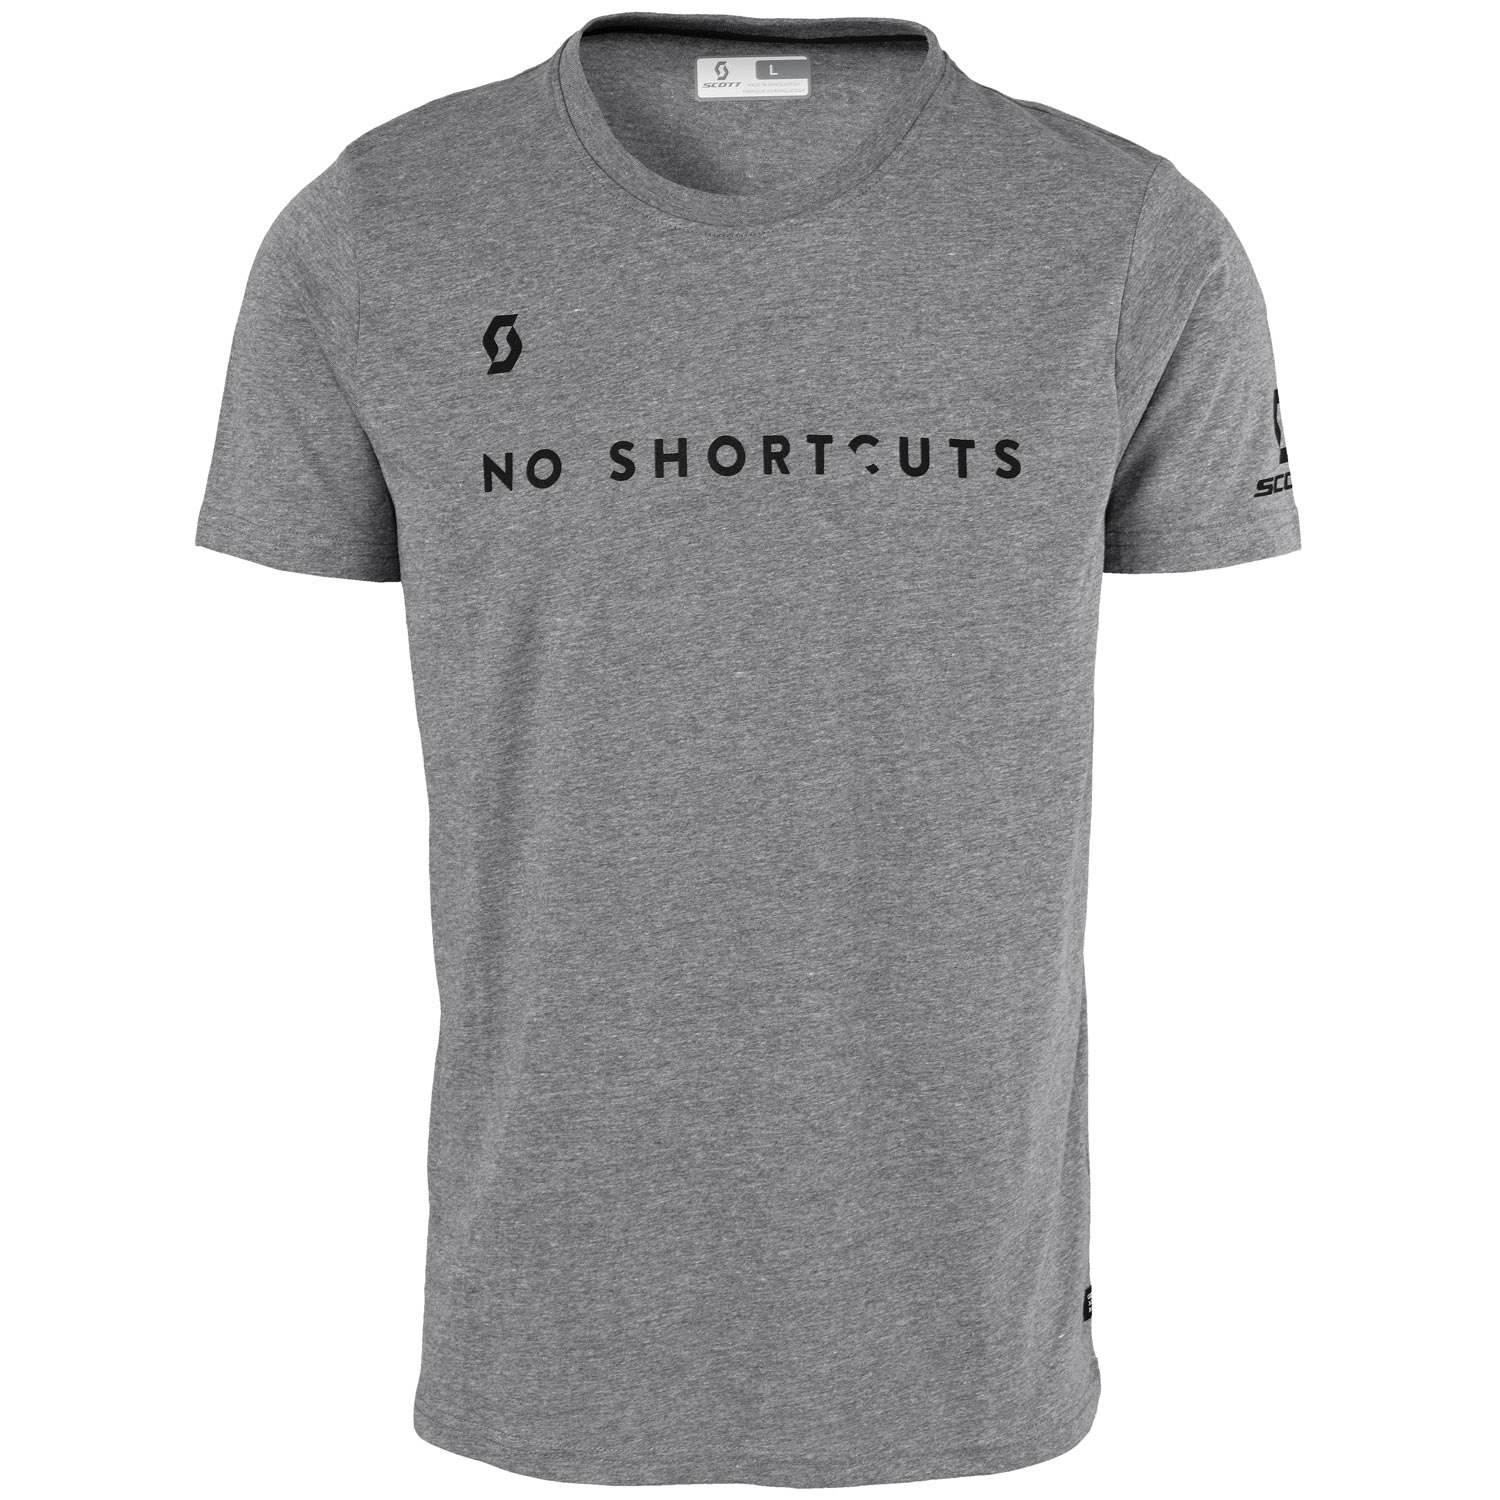 Scott T-Shirt 5 No Shortcuts Grau meliert